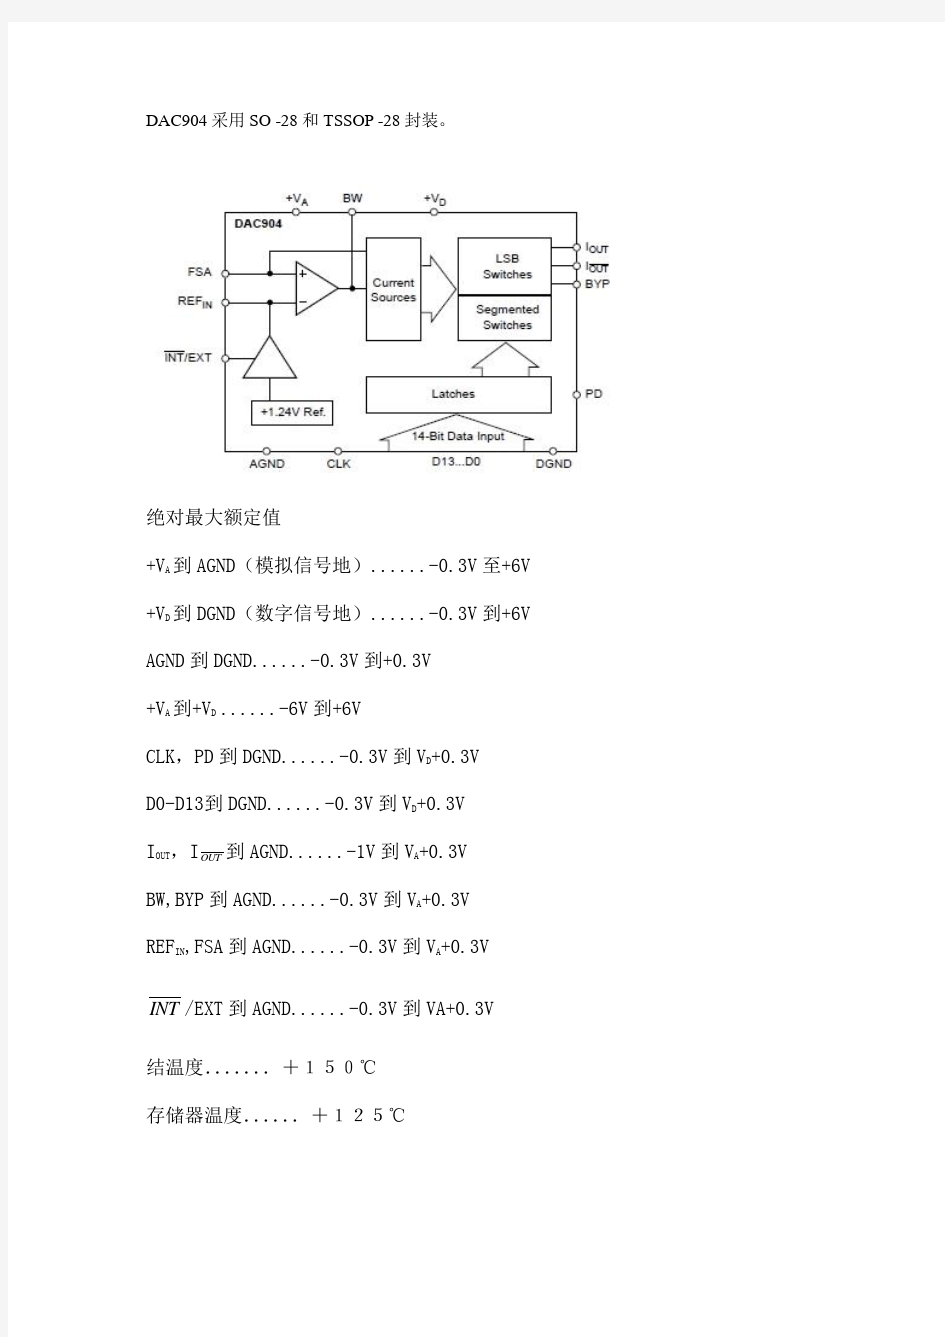 dac904数据手册中文版